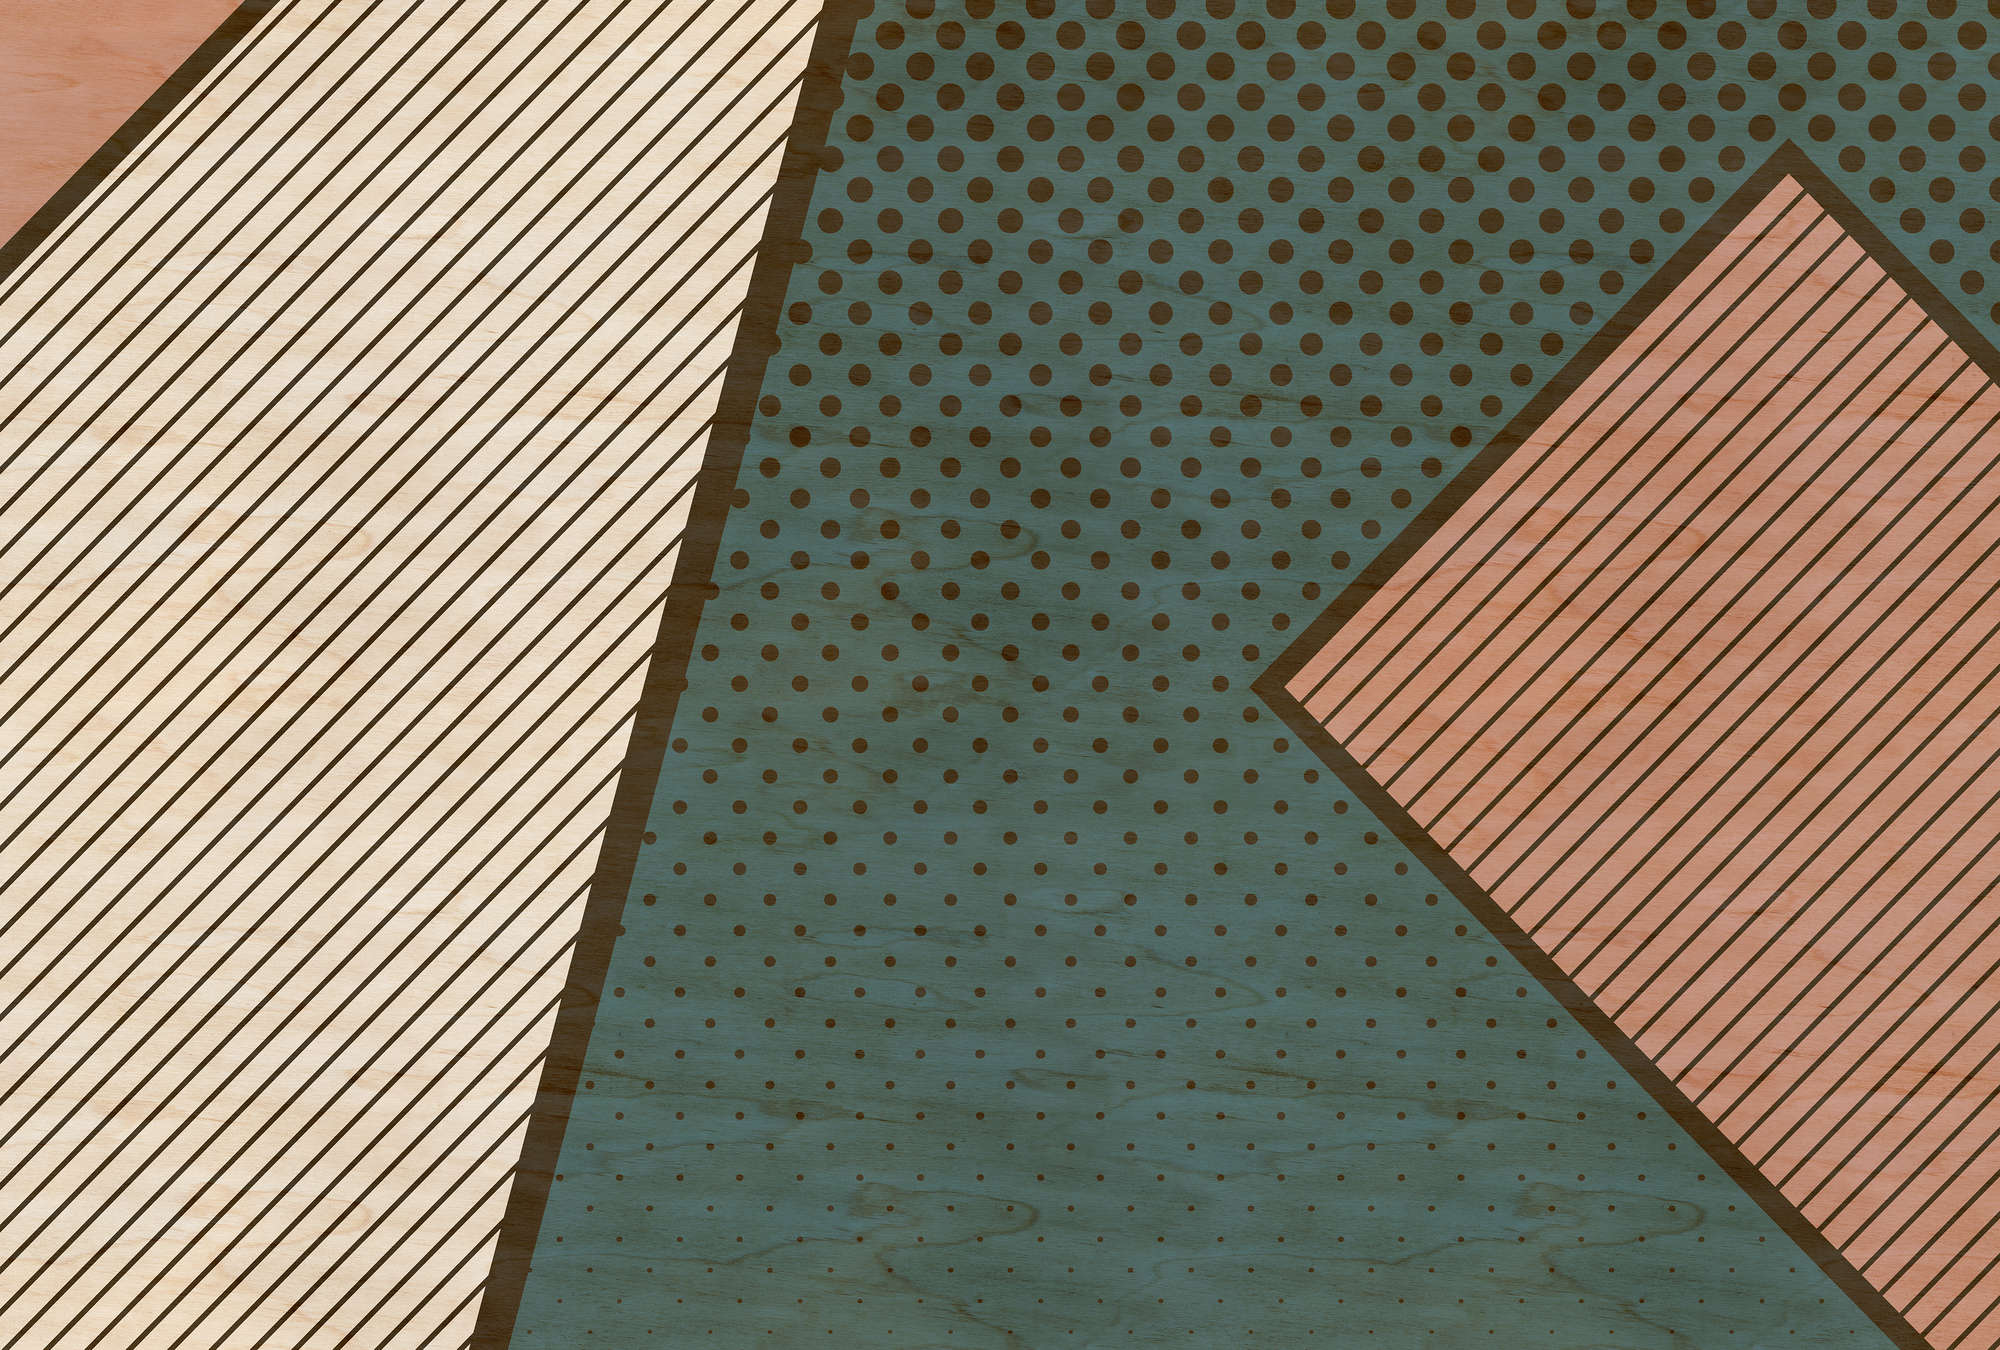             Vogelbende 1 - gedessineerd fotobehang, multiplex structuur met moderne kleurvlakken - Beige, Roze | Mat glad vlies
        